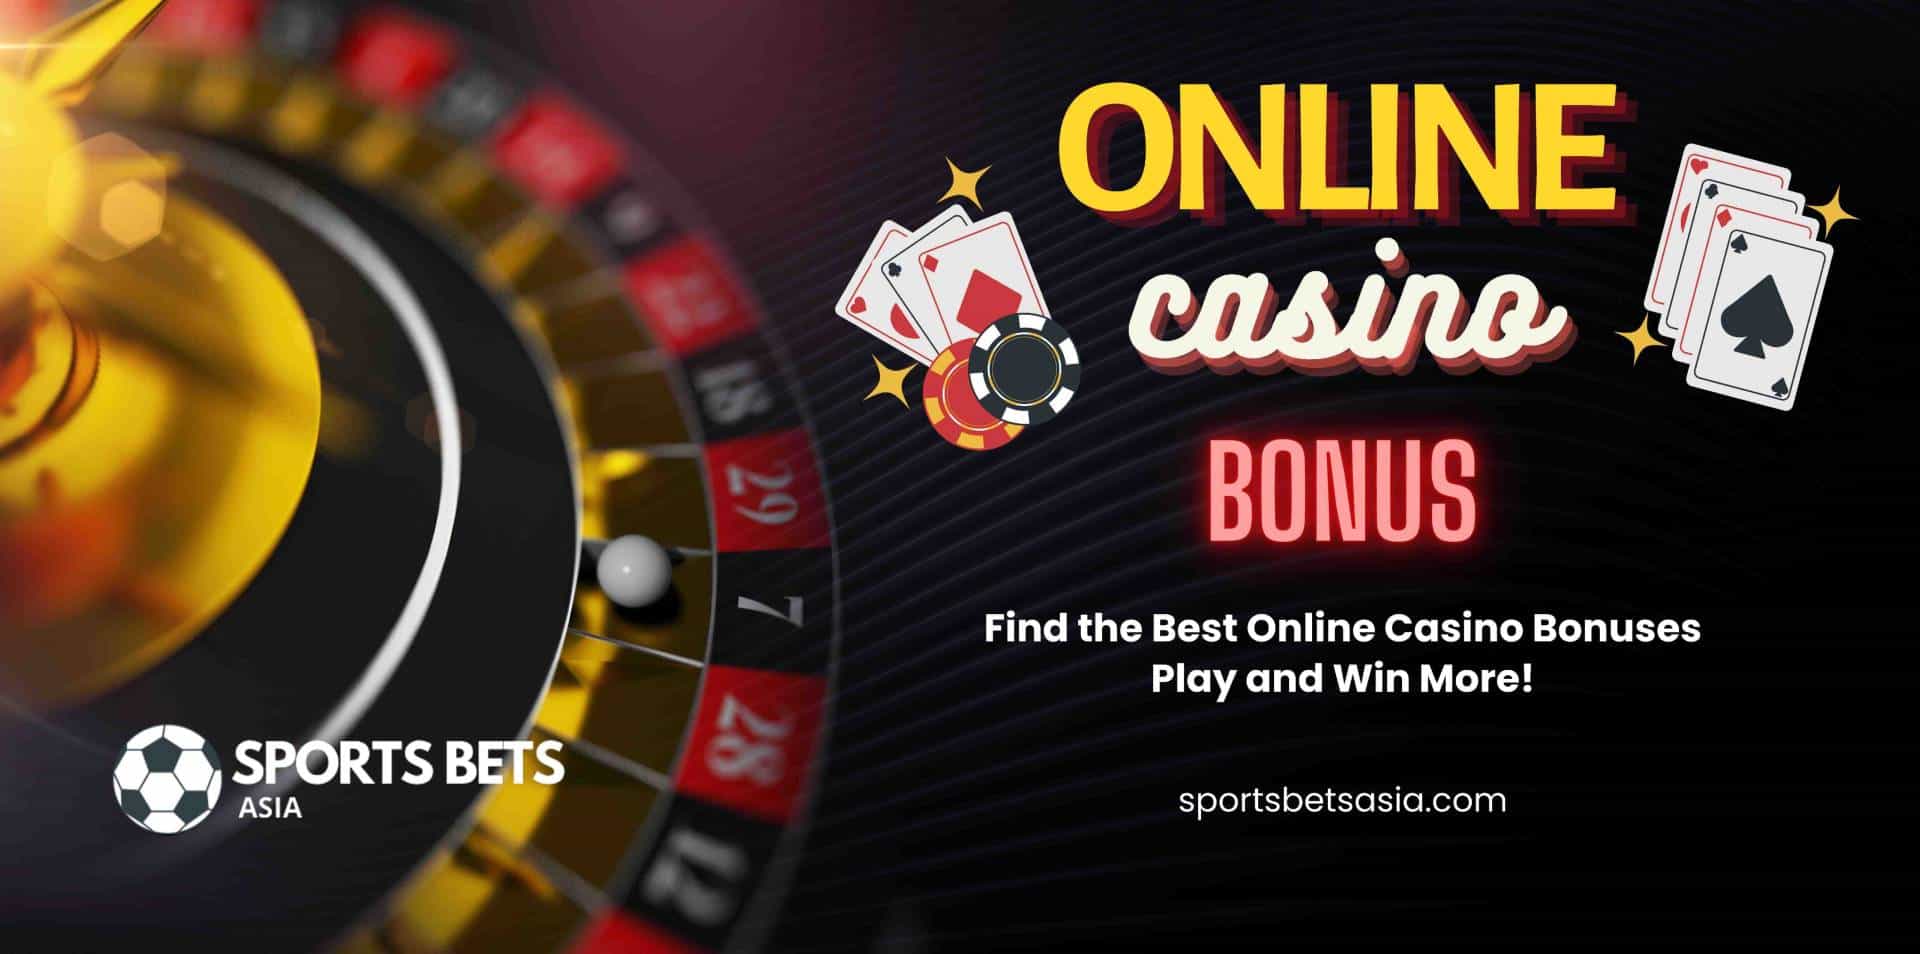 Best casino bonus online играть карты черви онлайн бесплатно